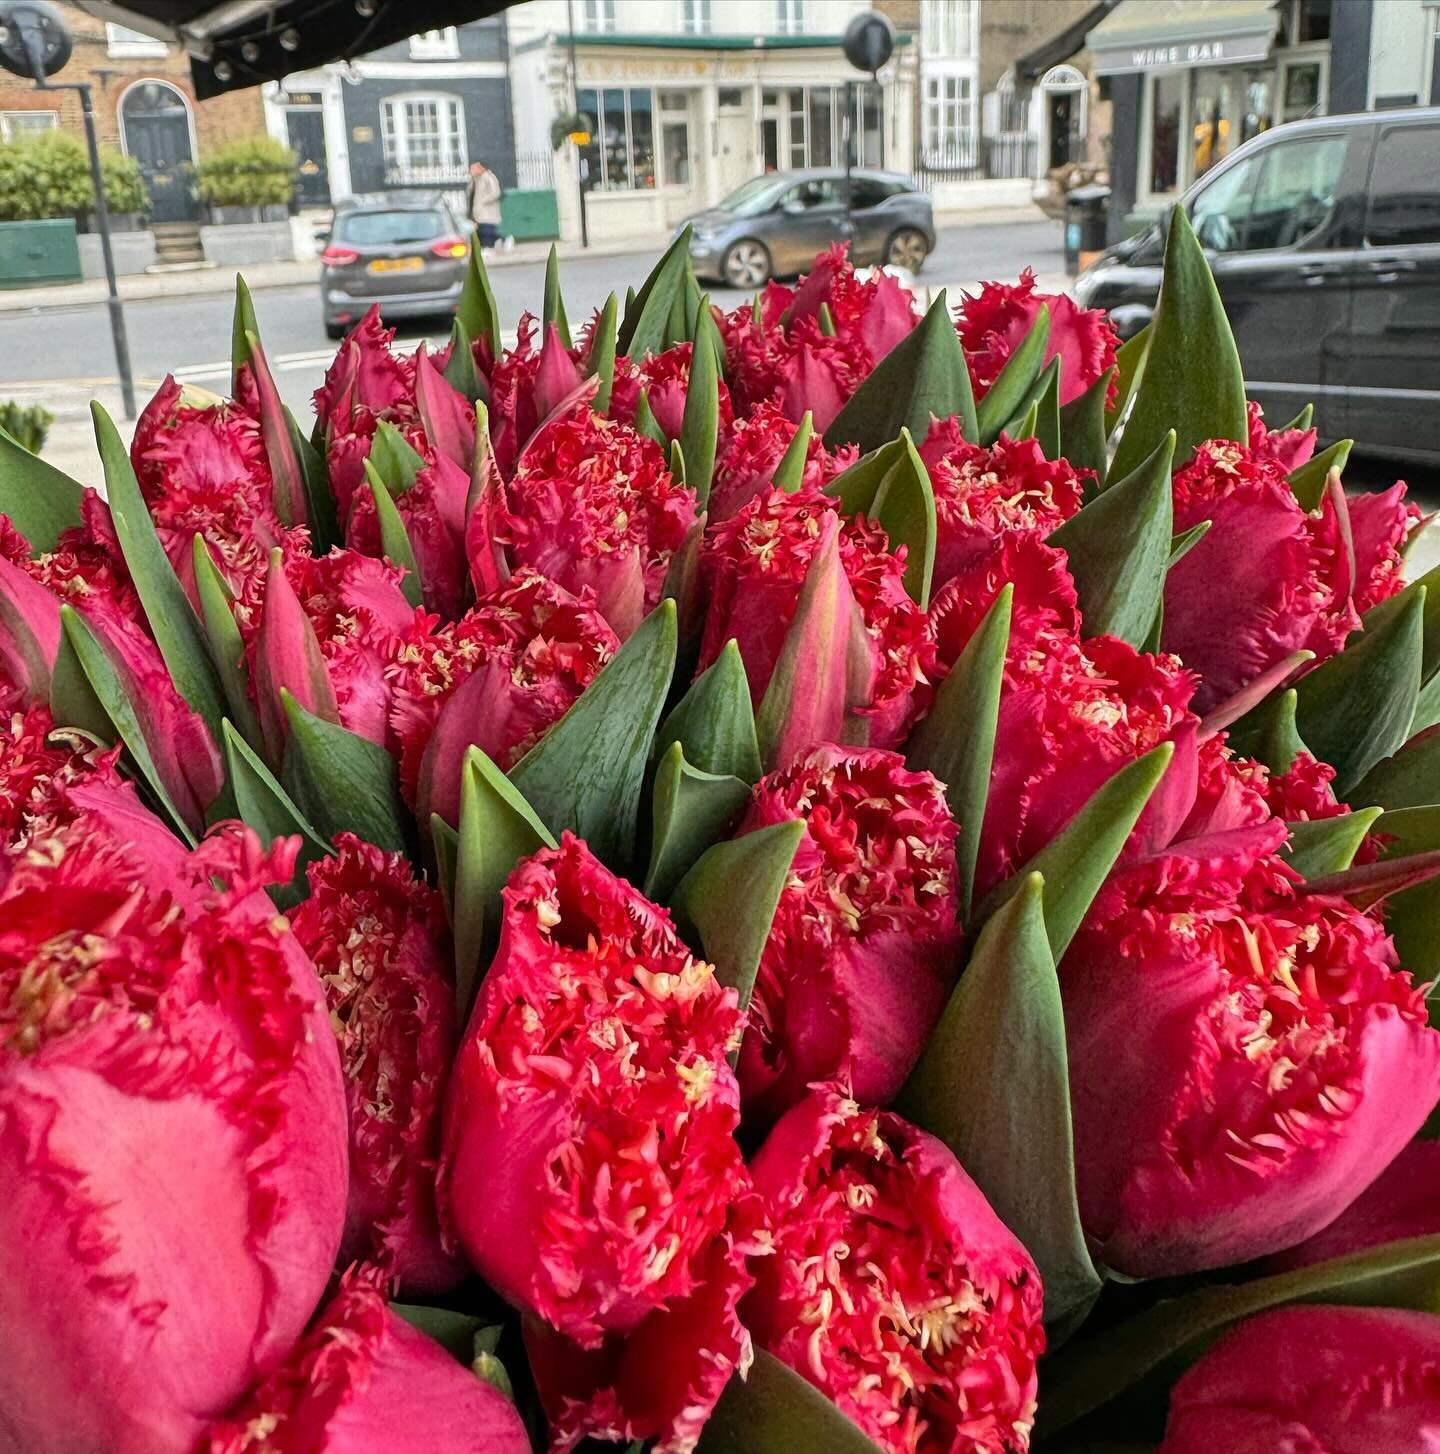 #johnandjessie #flowers #flowersofinstagram #londonflowers #londonflorist #flowershop #tulips #tulipsofinstagram #tuliplover #kensington #hollandpark #nottinghill #royalboroughofkensingtonandchelsea #london